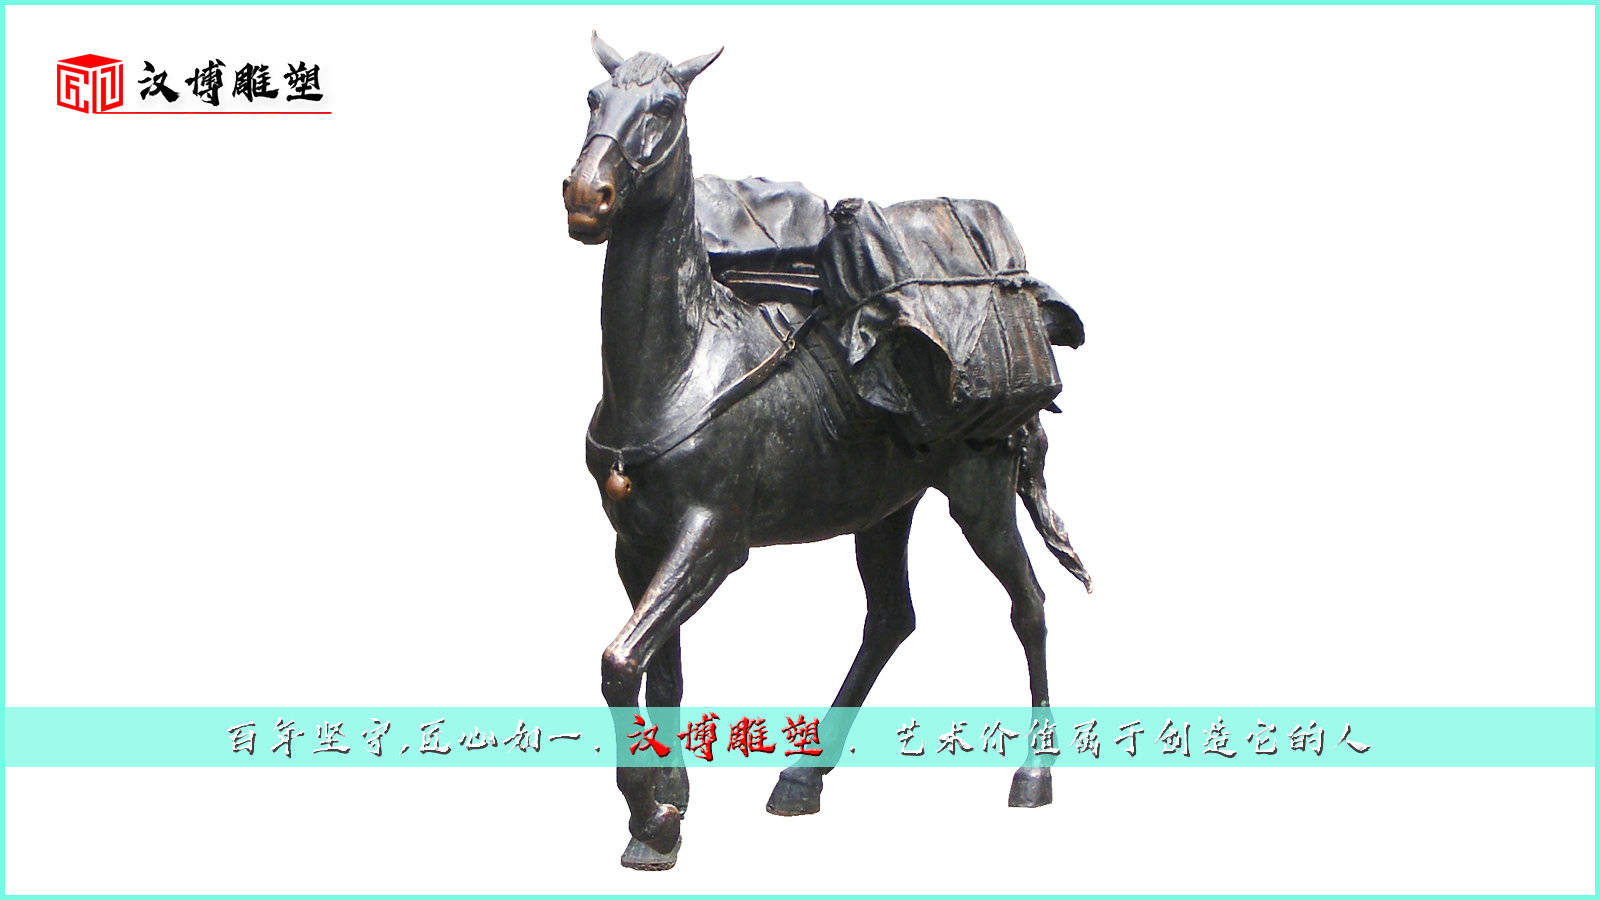 茶马古道主题文化雕塑——茶马古道起源于唐宋时期的“茶马互市”。